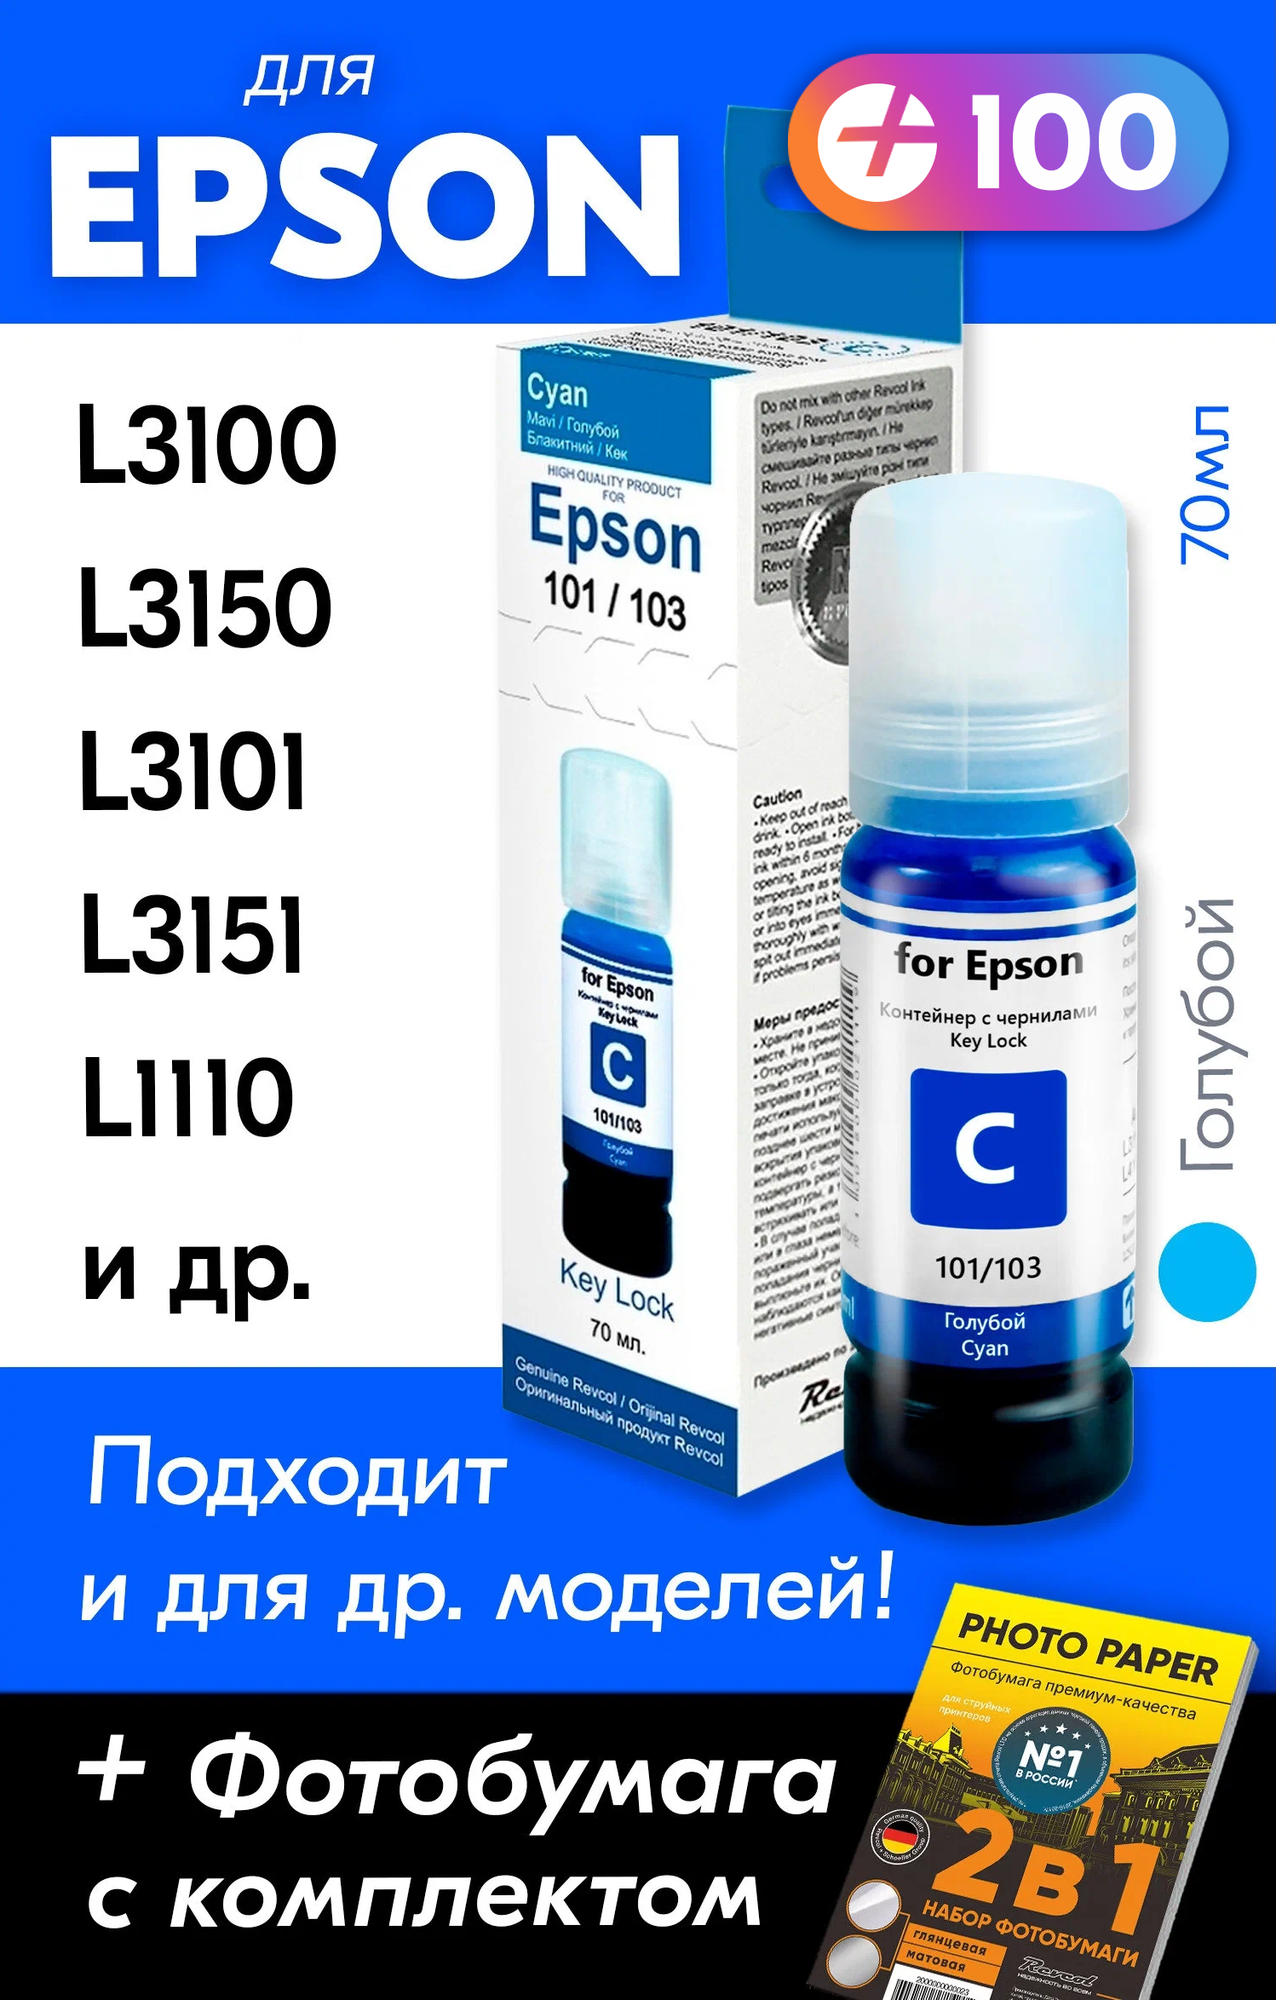 Чернила для Epson 101, 103 Key Lock, Epson L3150, L3250, L3100, L3151, L3101 и др. 70 мл. Краска для заправки струйного принтера (Голубой) Cyan